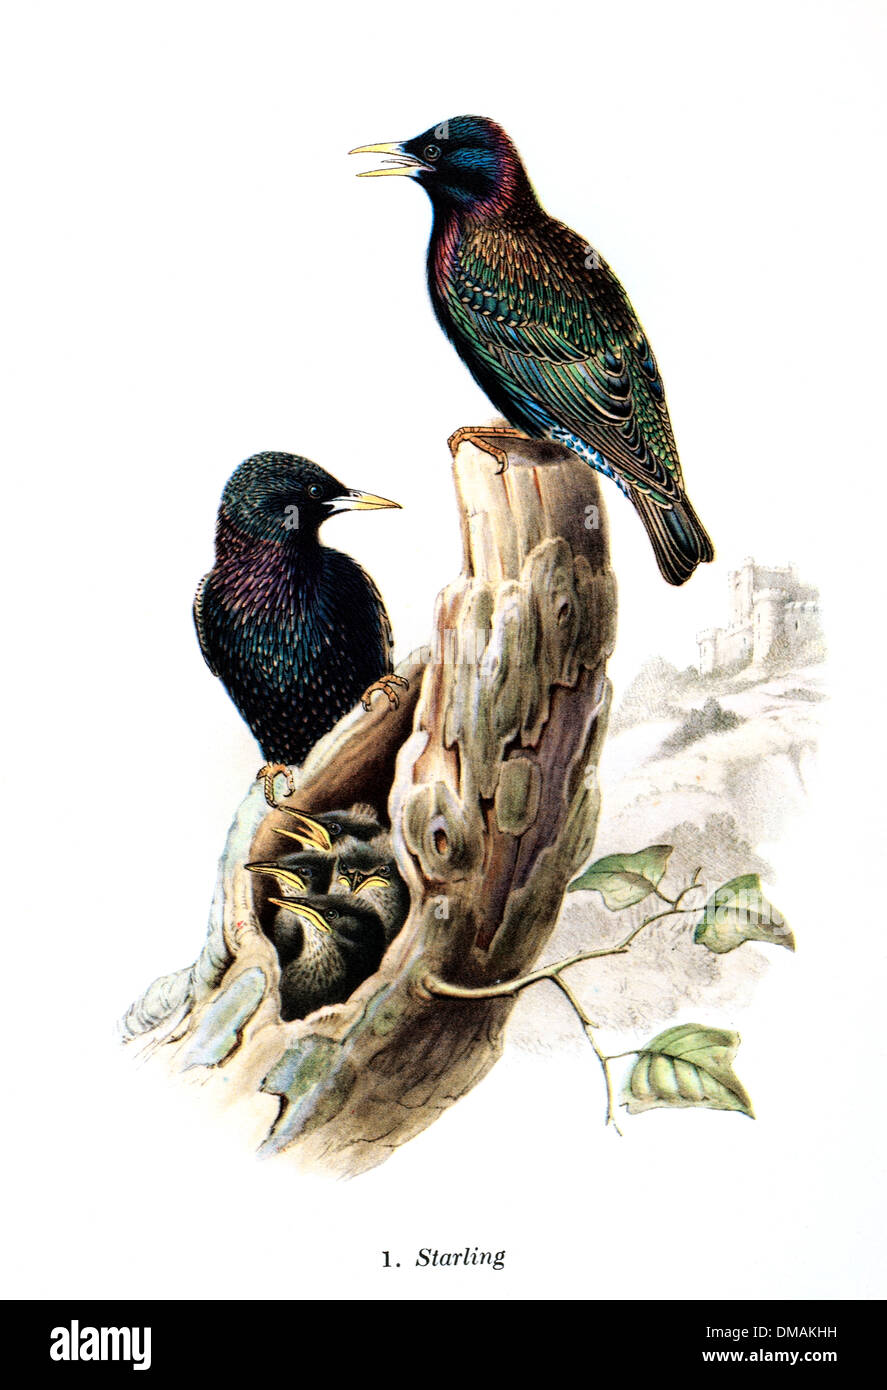 Dibujo de ilustración Vintage Starling Bird documento archivado histórico Foto de stock